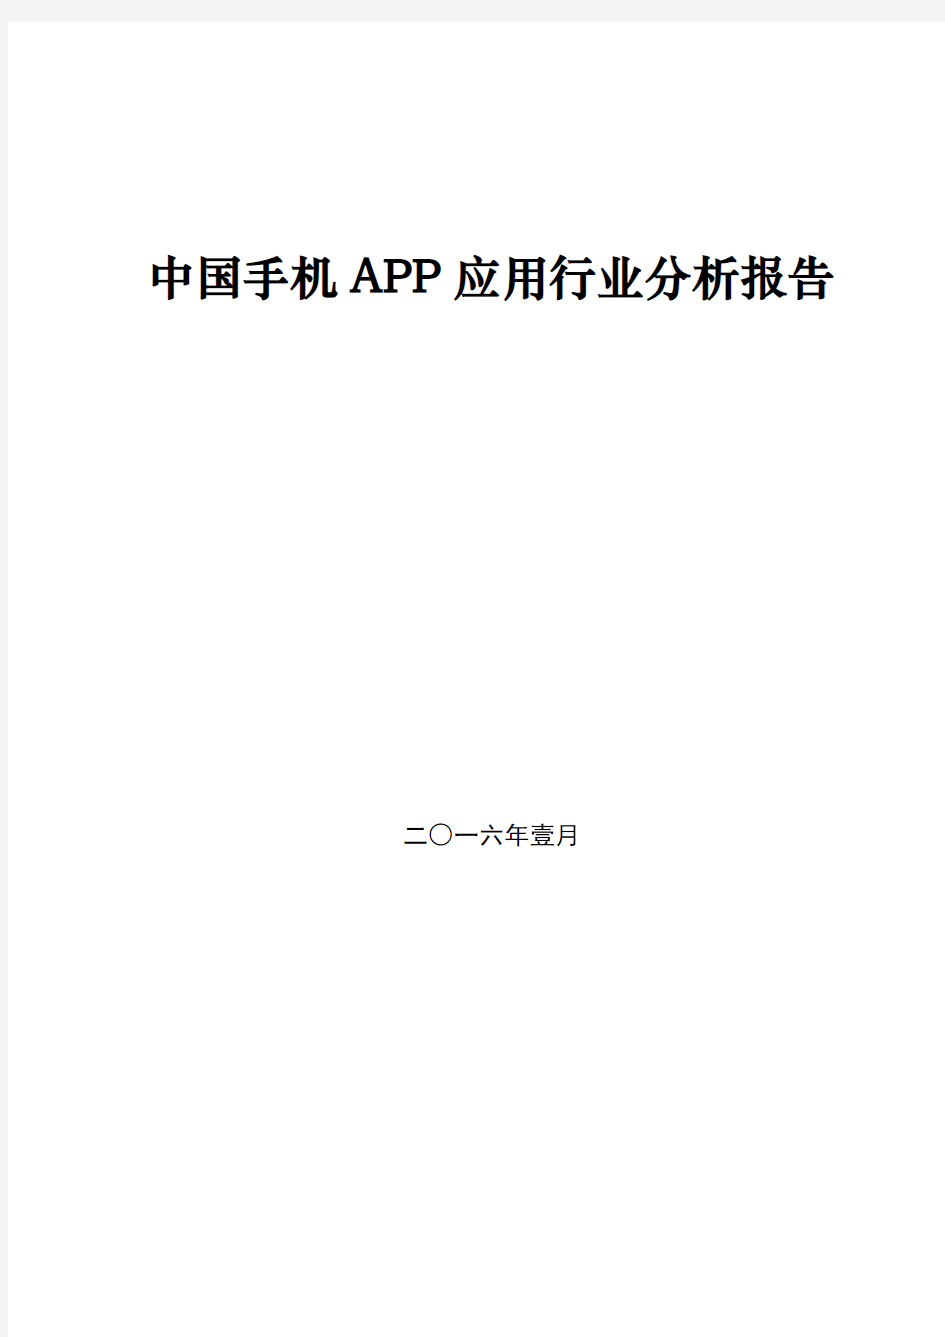 中国手机APP应用行业分析报告